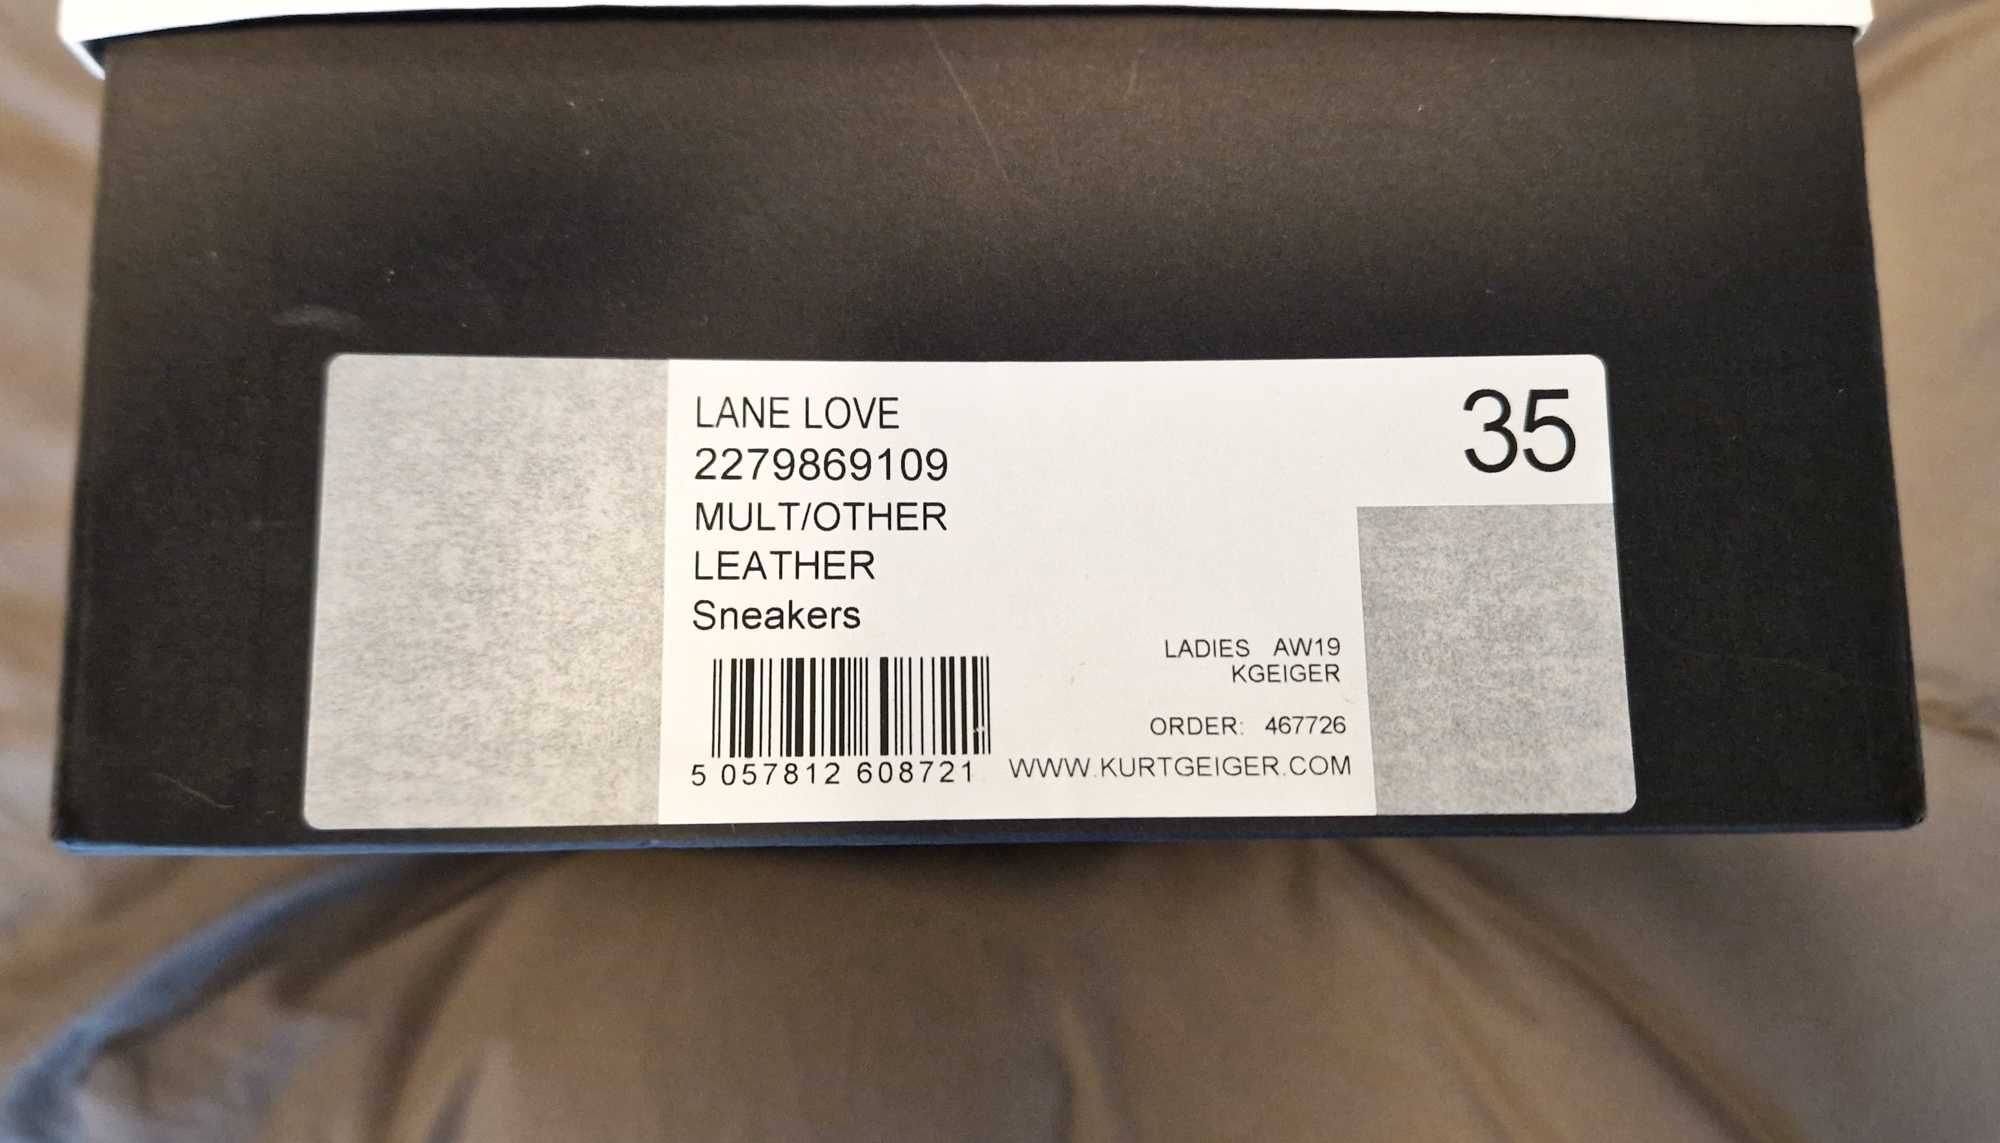 Adidasi dama Kurt Geiger Sneakers Lane Love Multi Other 35